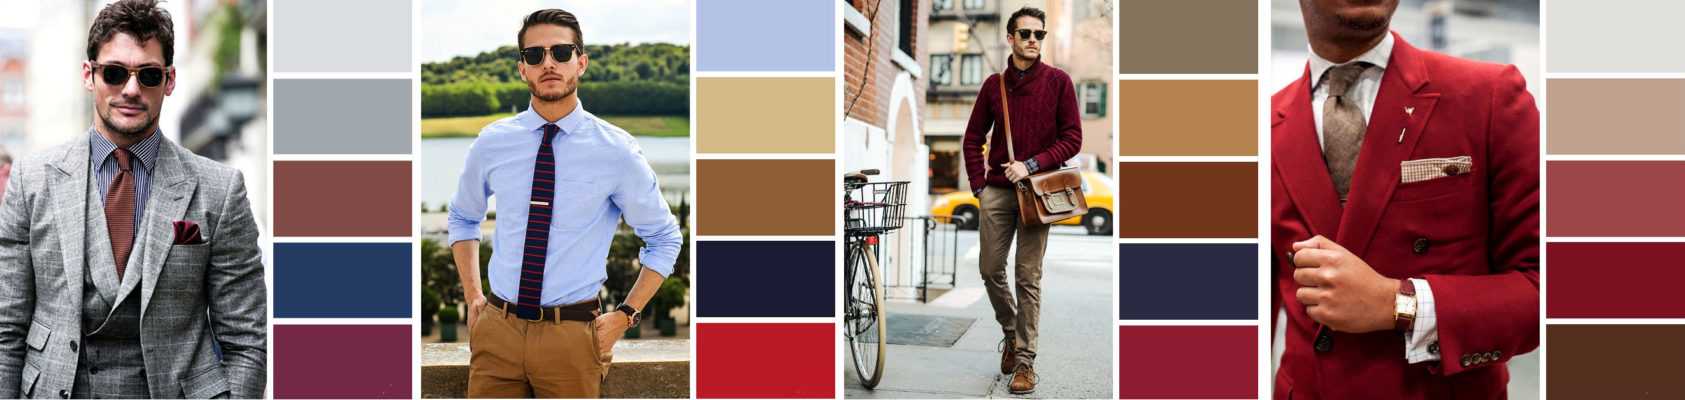 Как правильно сочетать цвета в одежде - 8 принципов